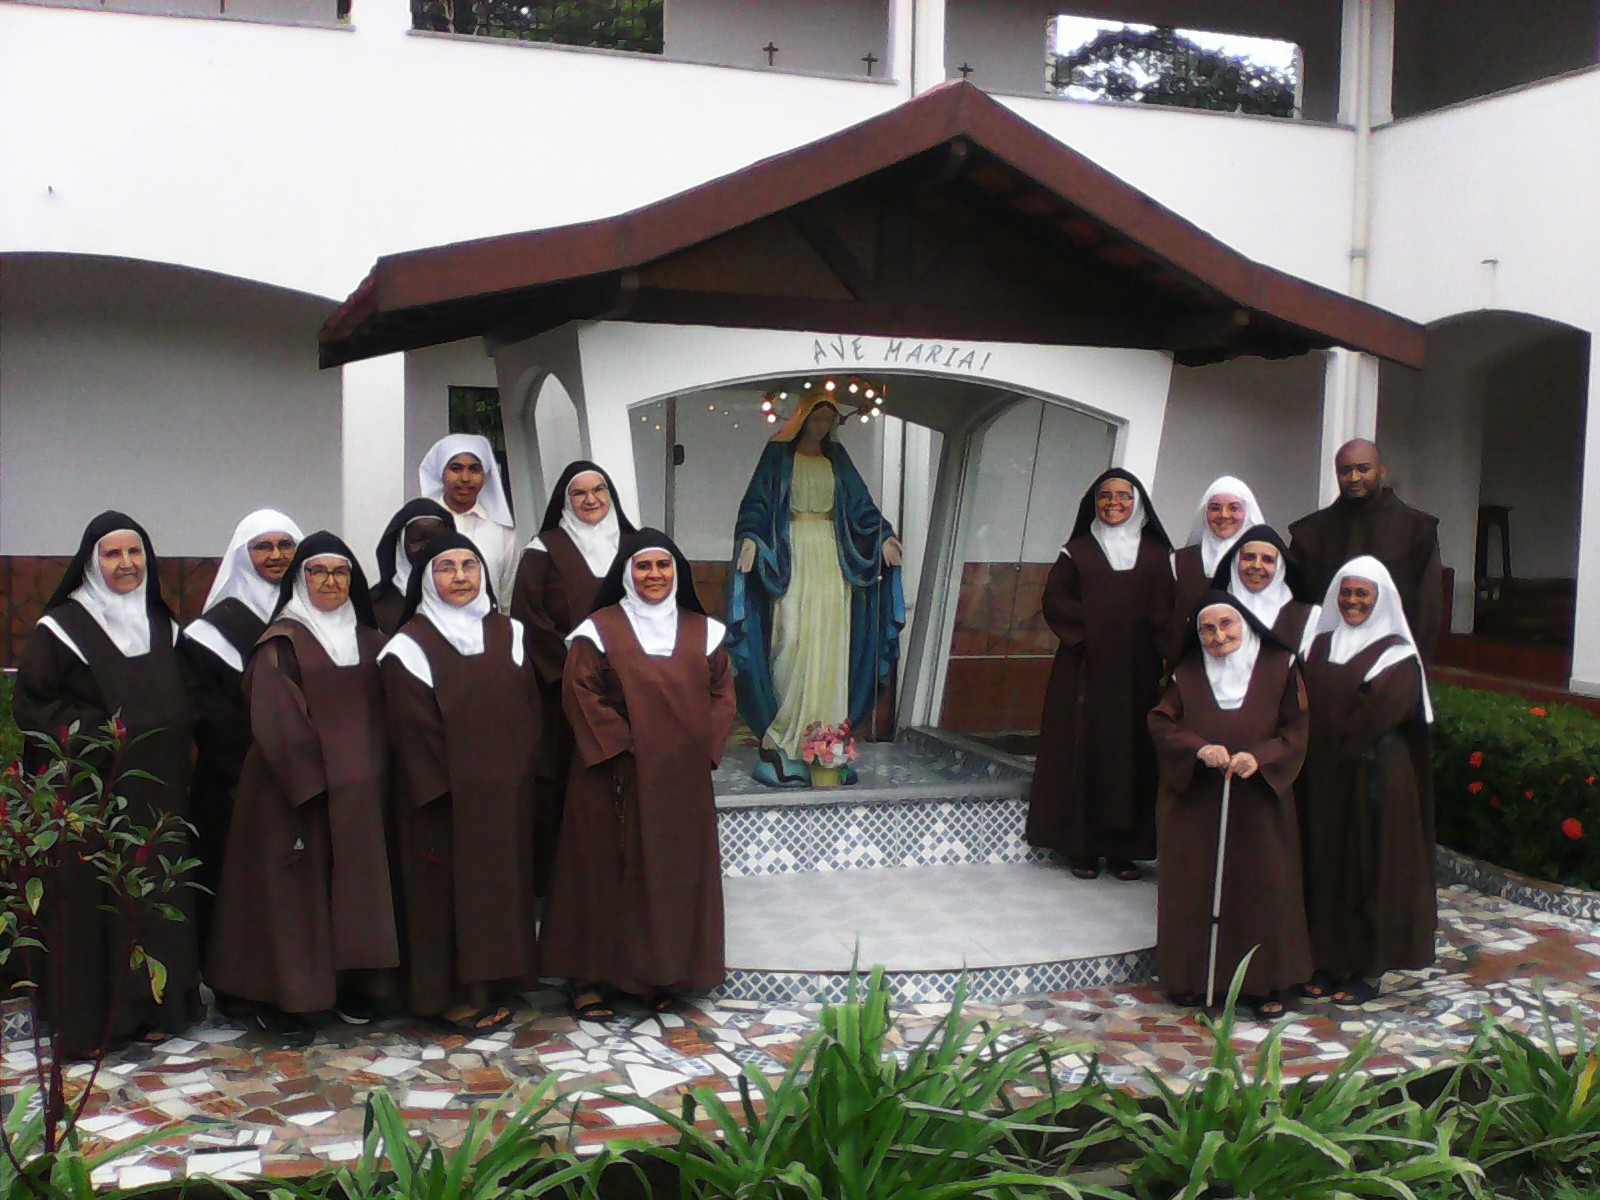 Flor do Carmelo NÂº 38 - Ordem dos Padres Carmelitas DescalÃ§os